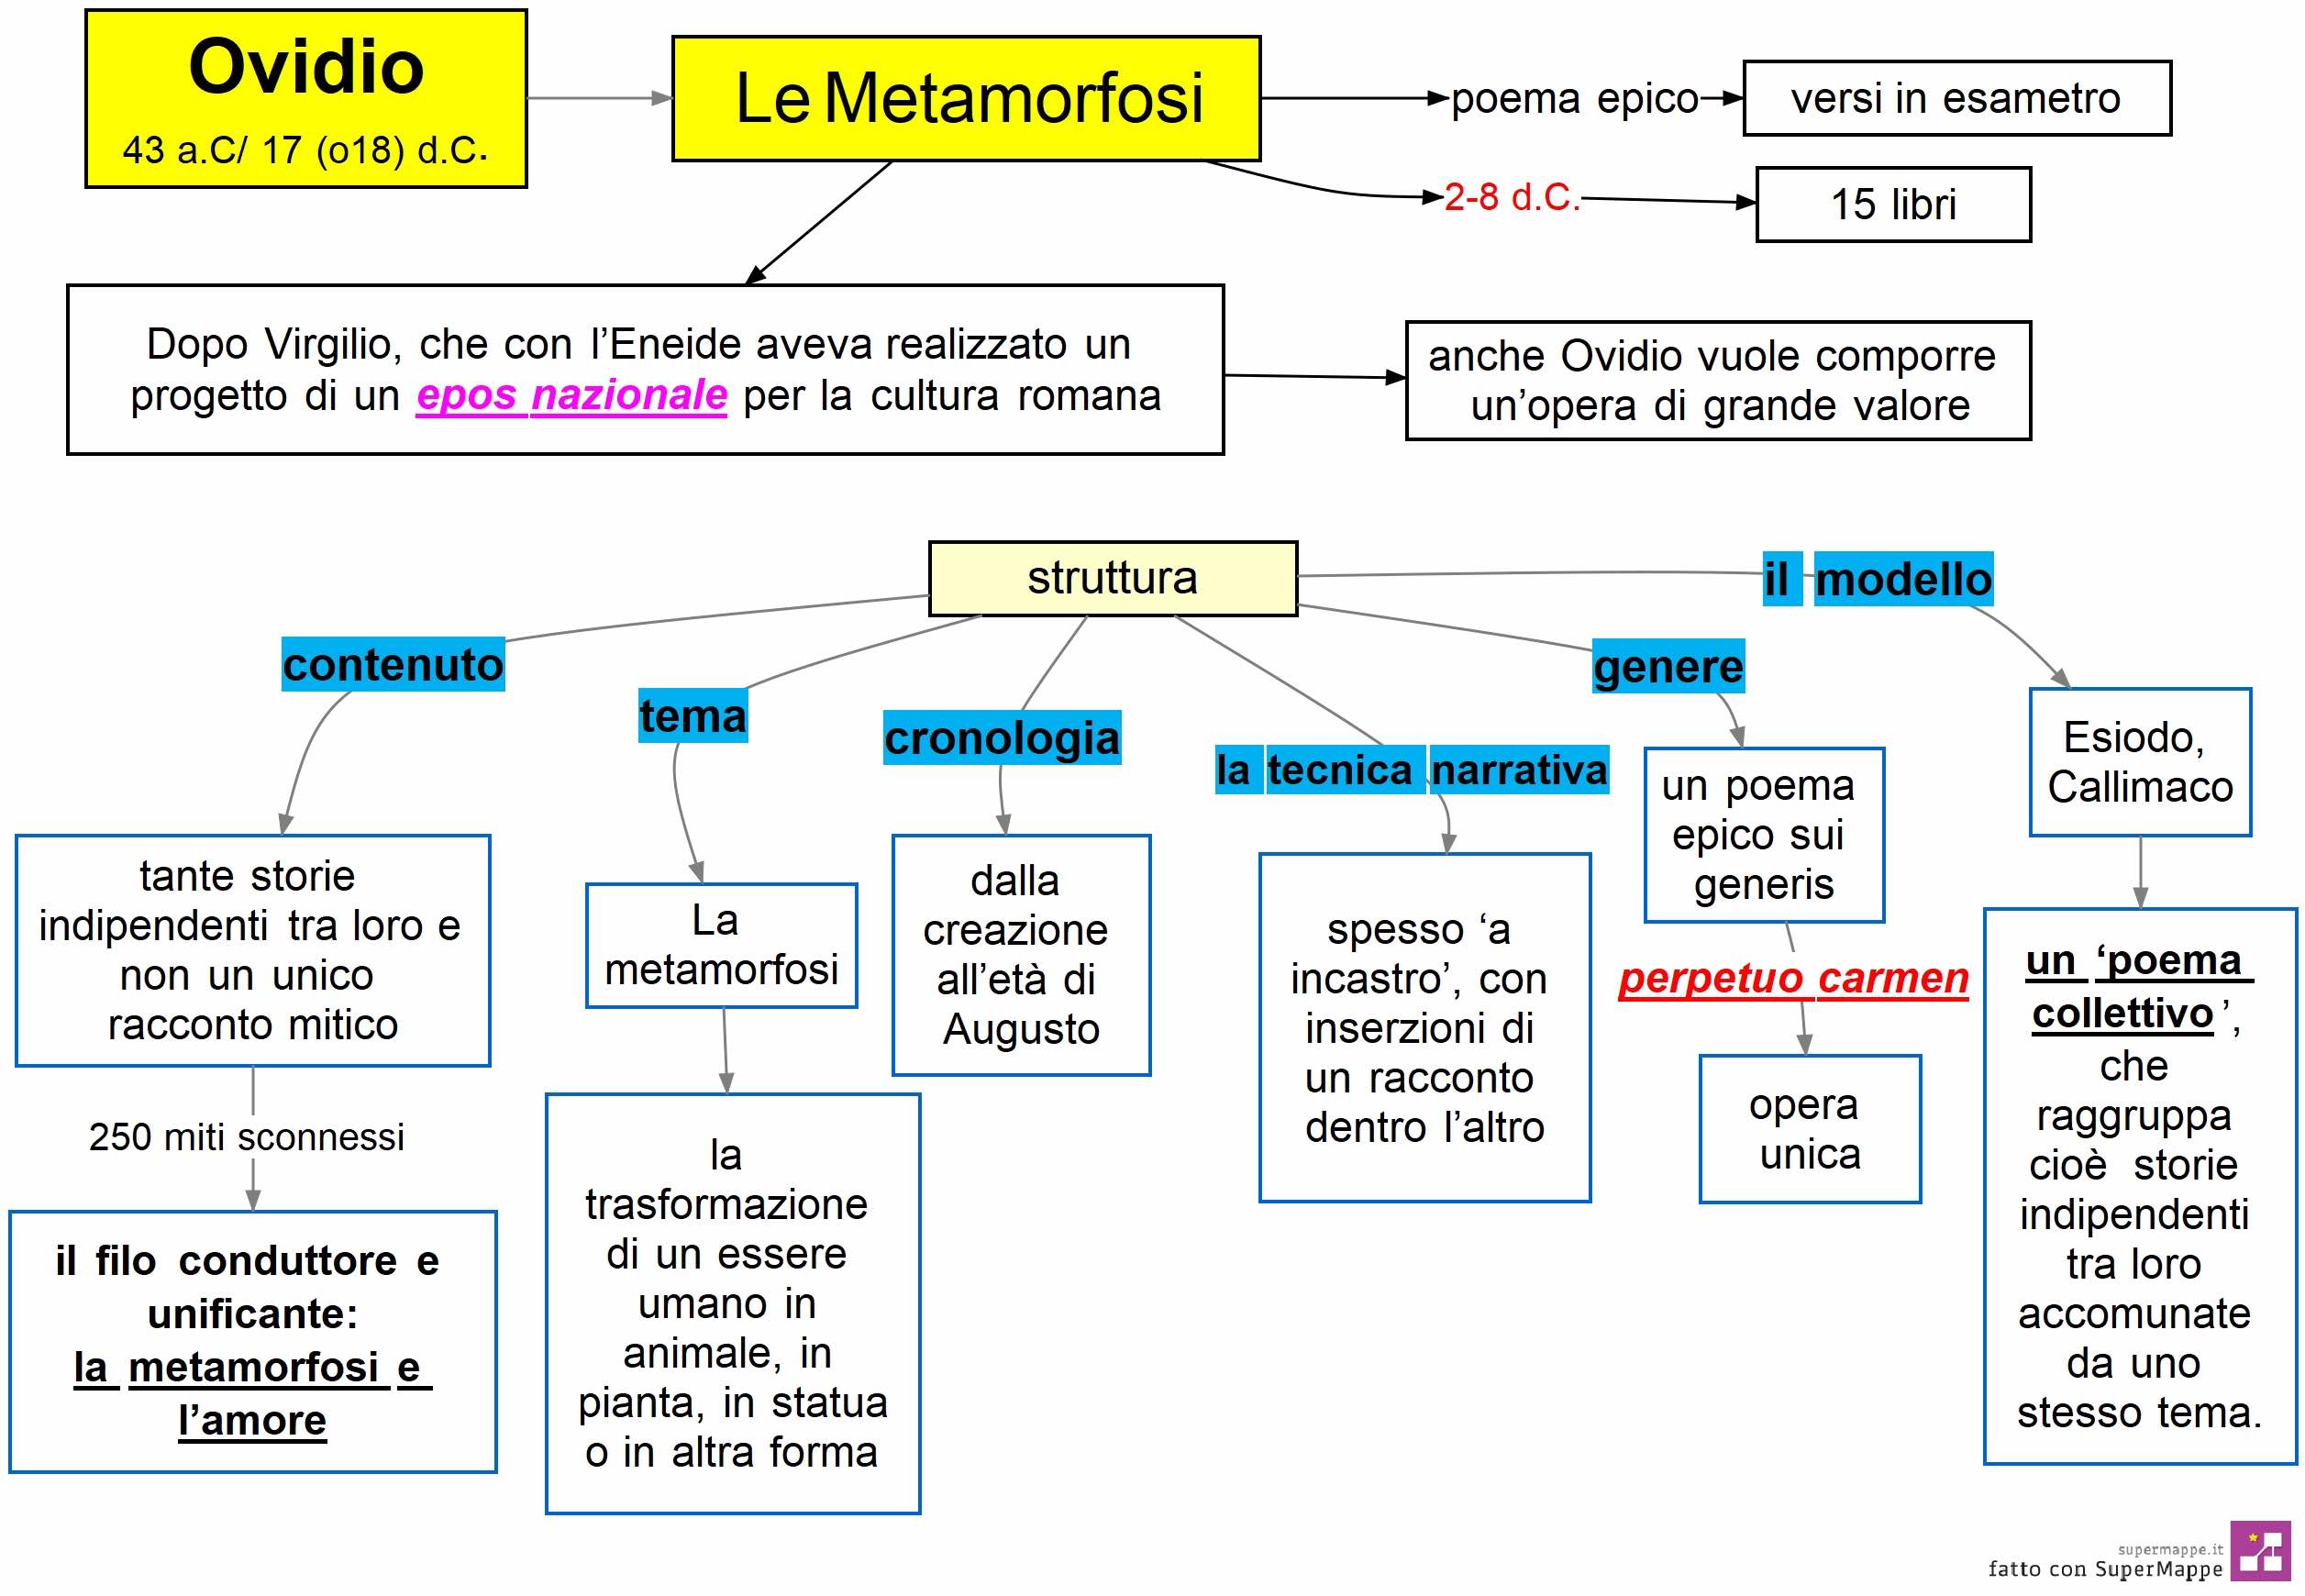 Ovidio - le Metamorfosi